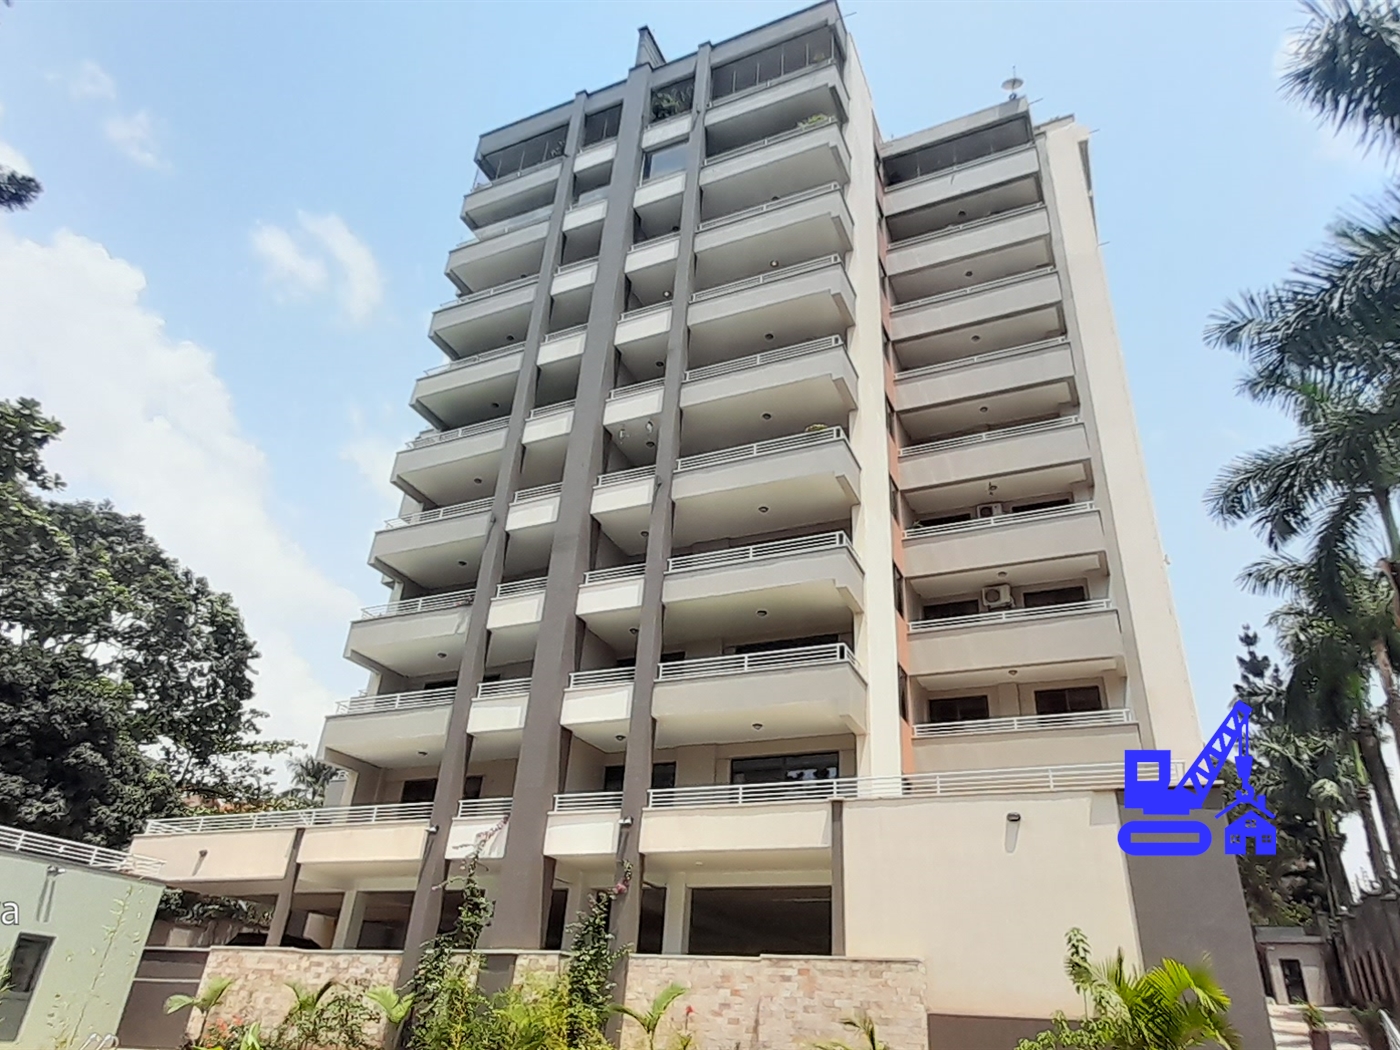 4 Bedroom Apartment For Rent In Naguru Kampala Uganda Code 11 10 22